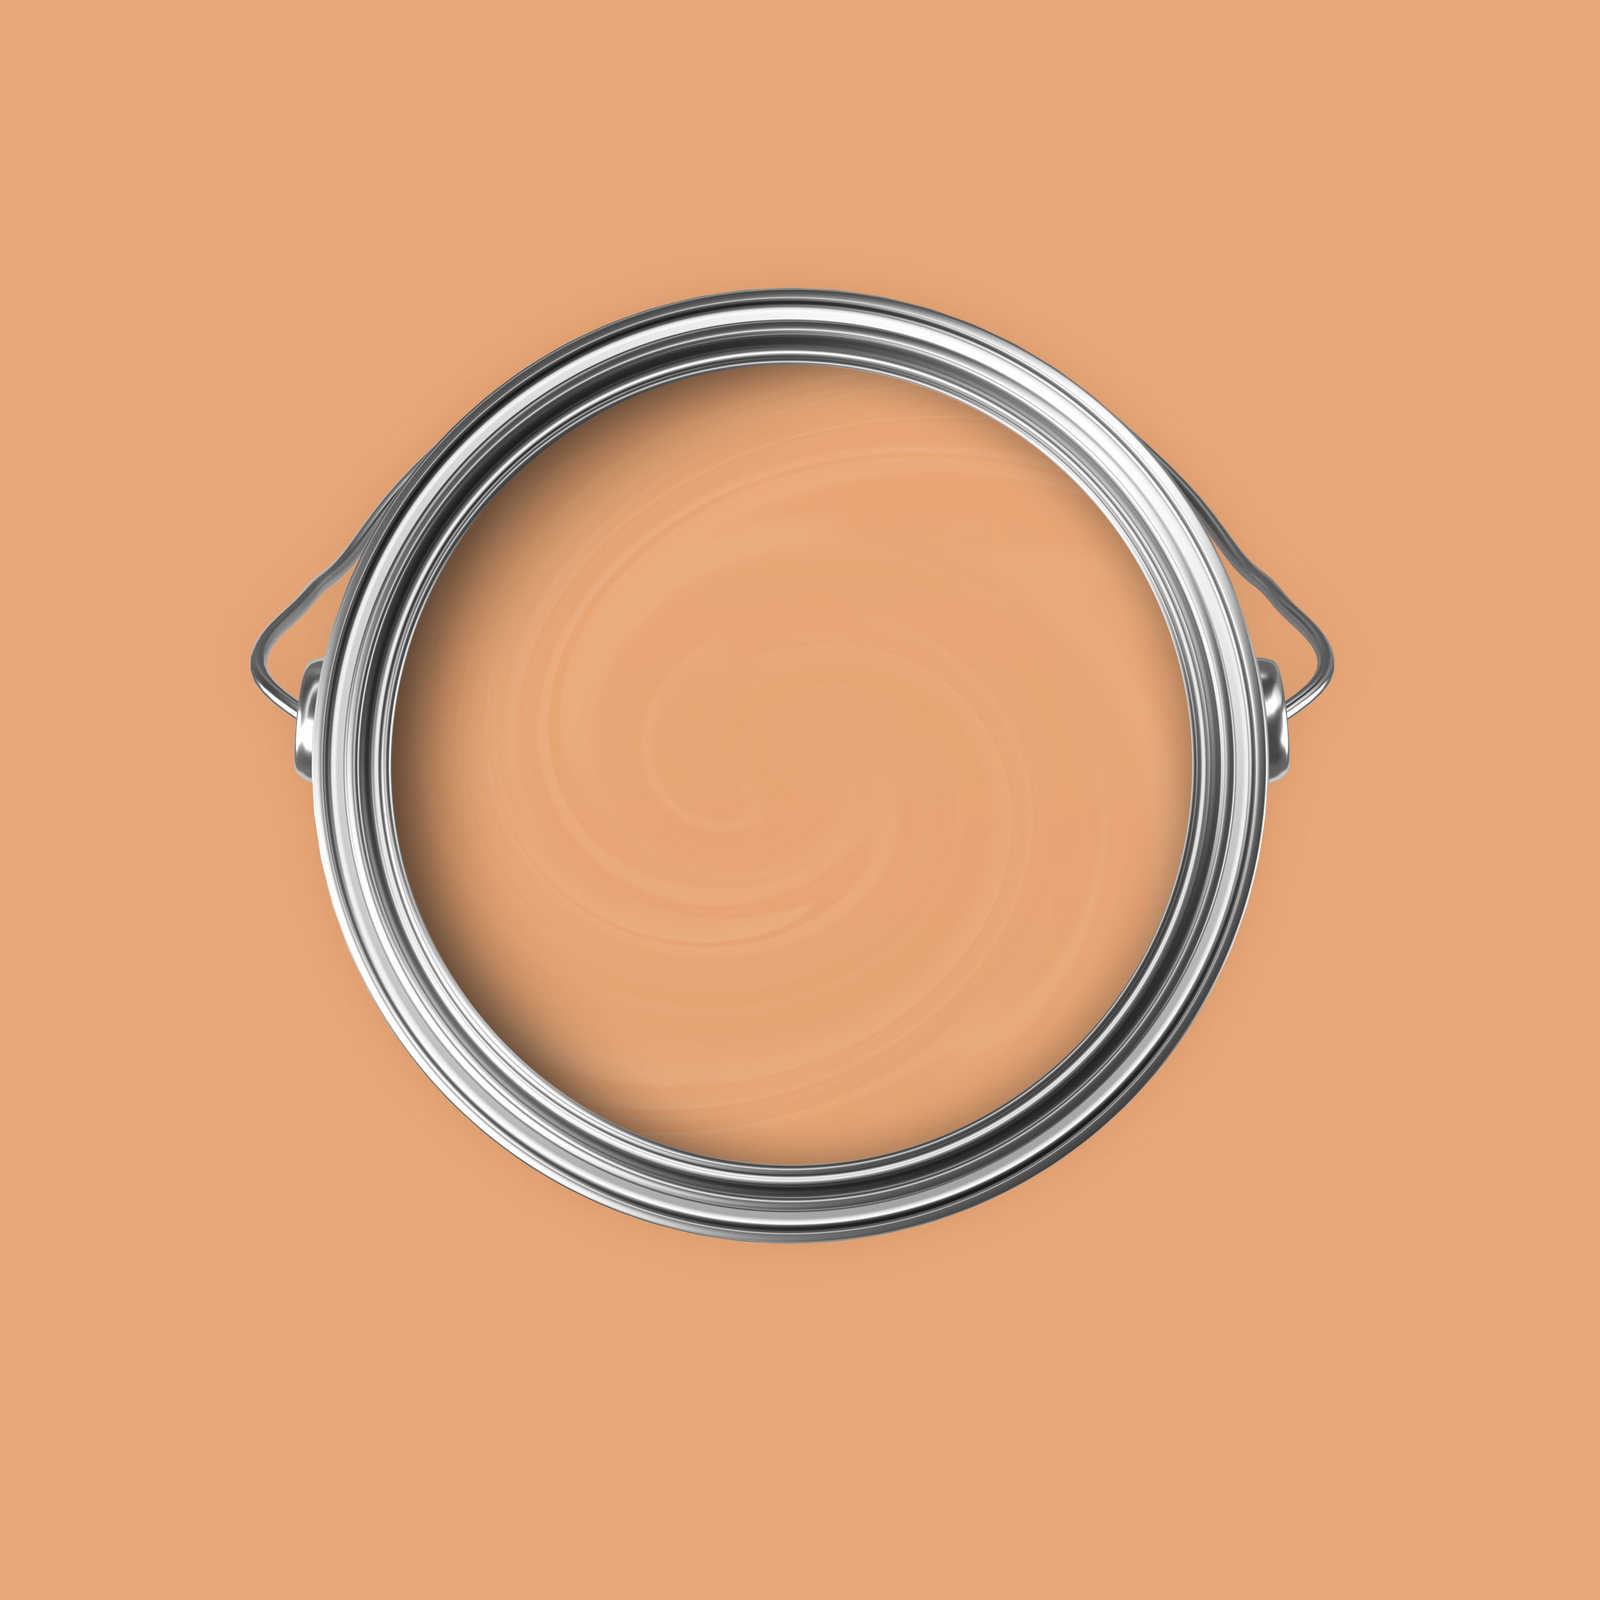             Premium Wandfarbe aufweckendes Apricot »Pretty Peach« NW901 – 5 Liter
        